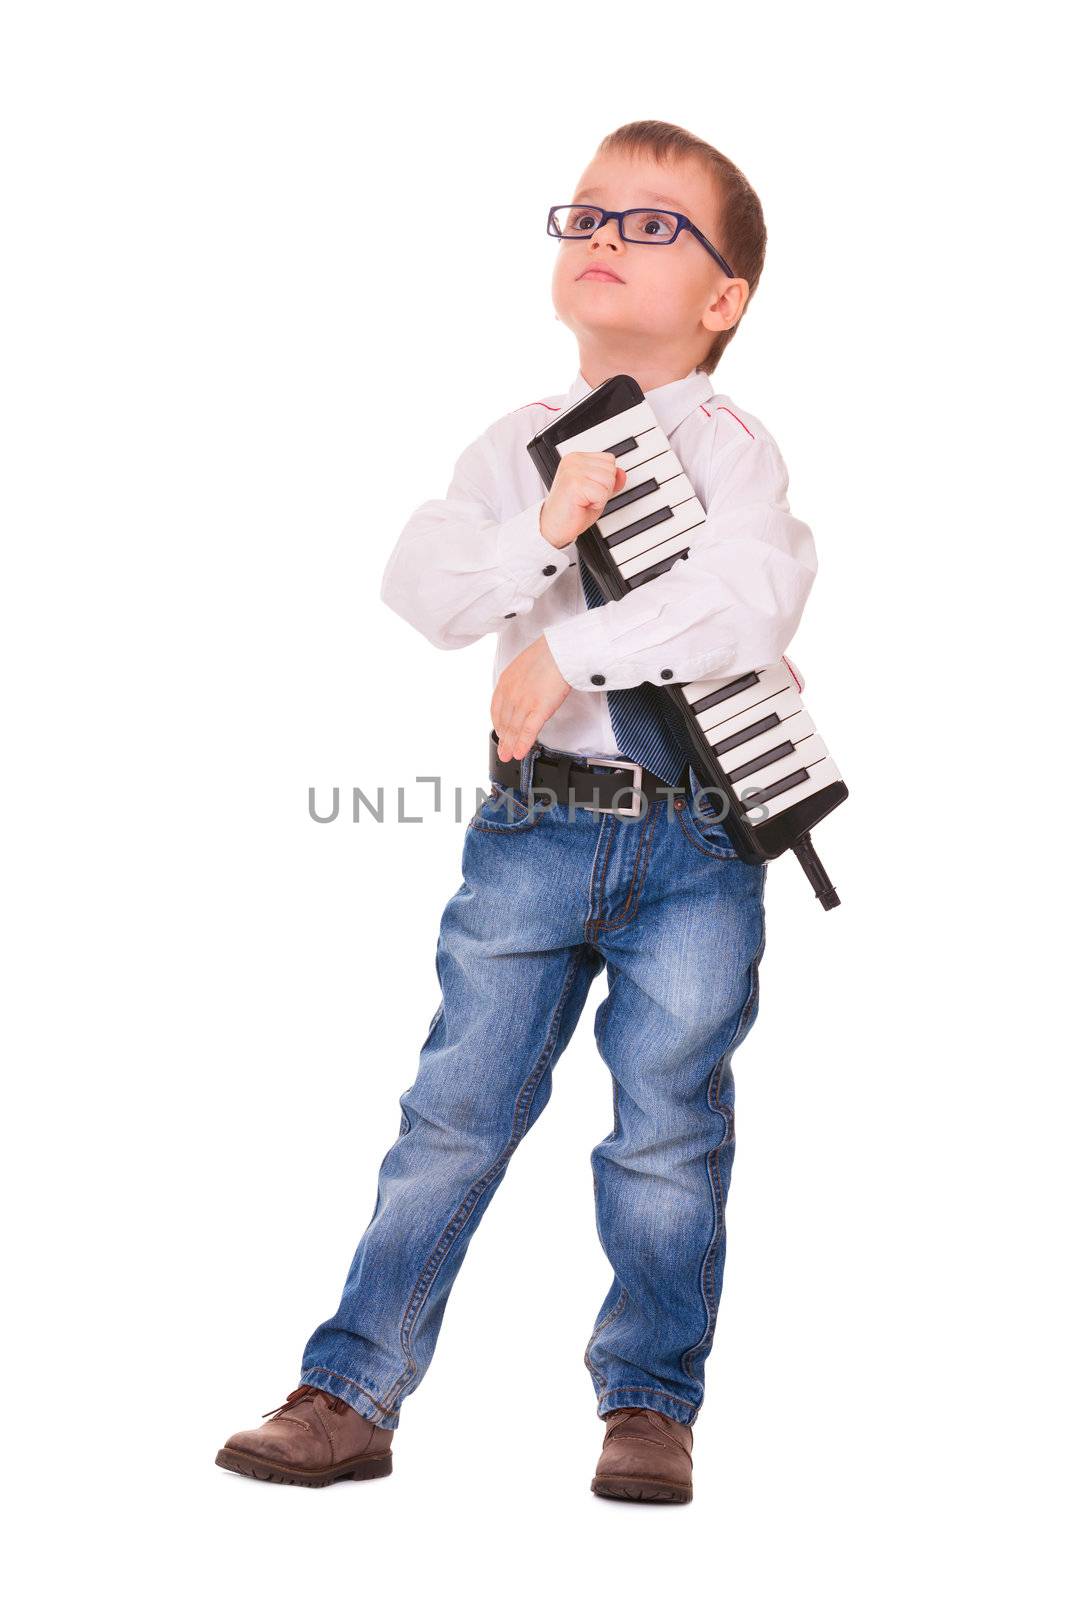 Kid with melodica on white by iryna_rasko